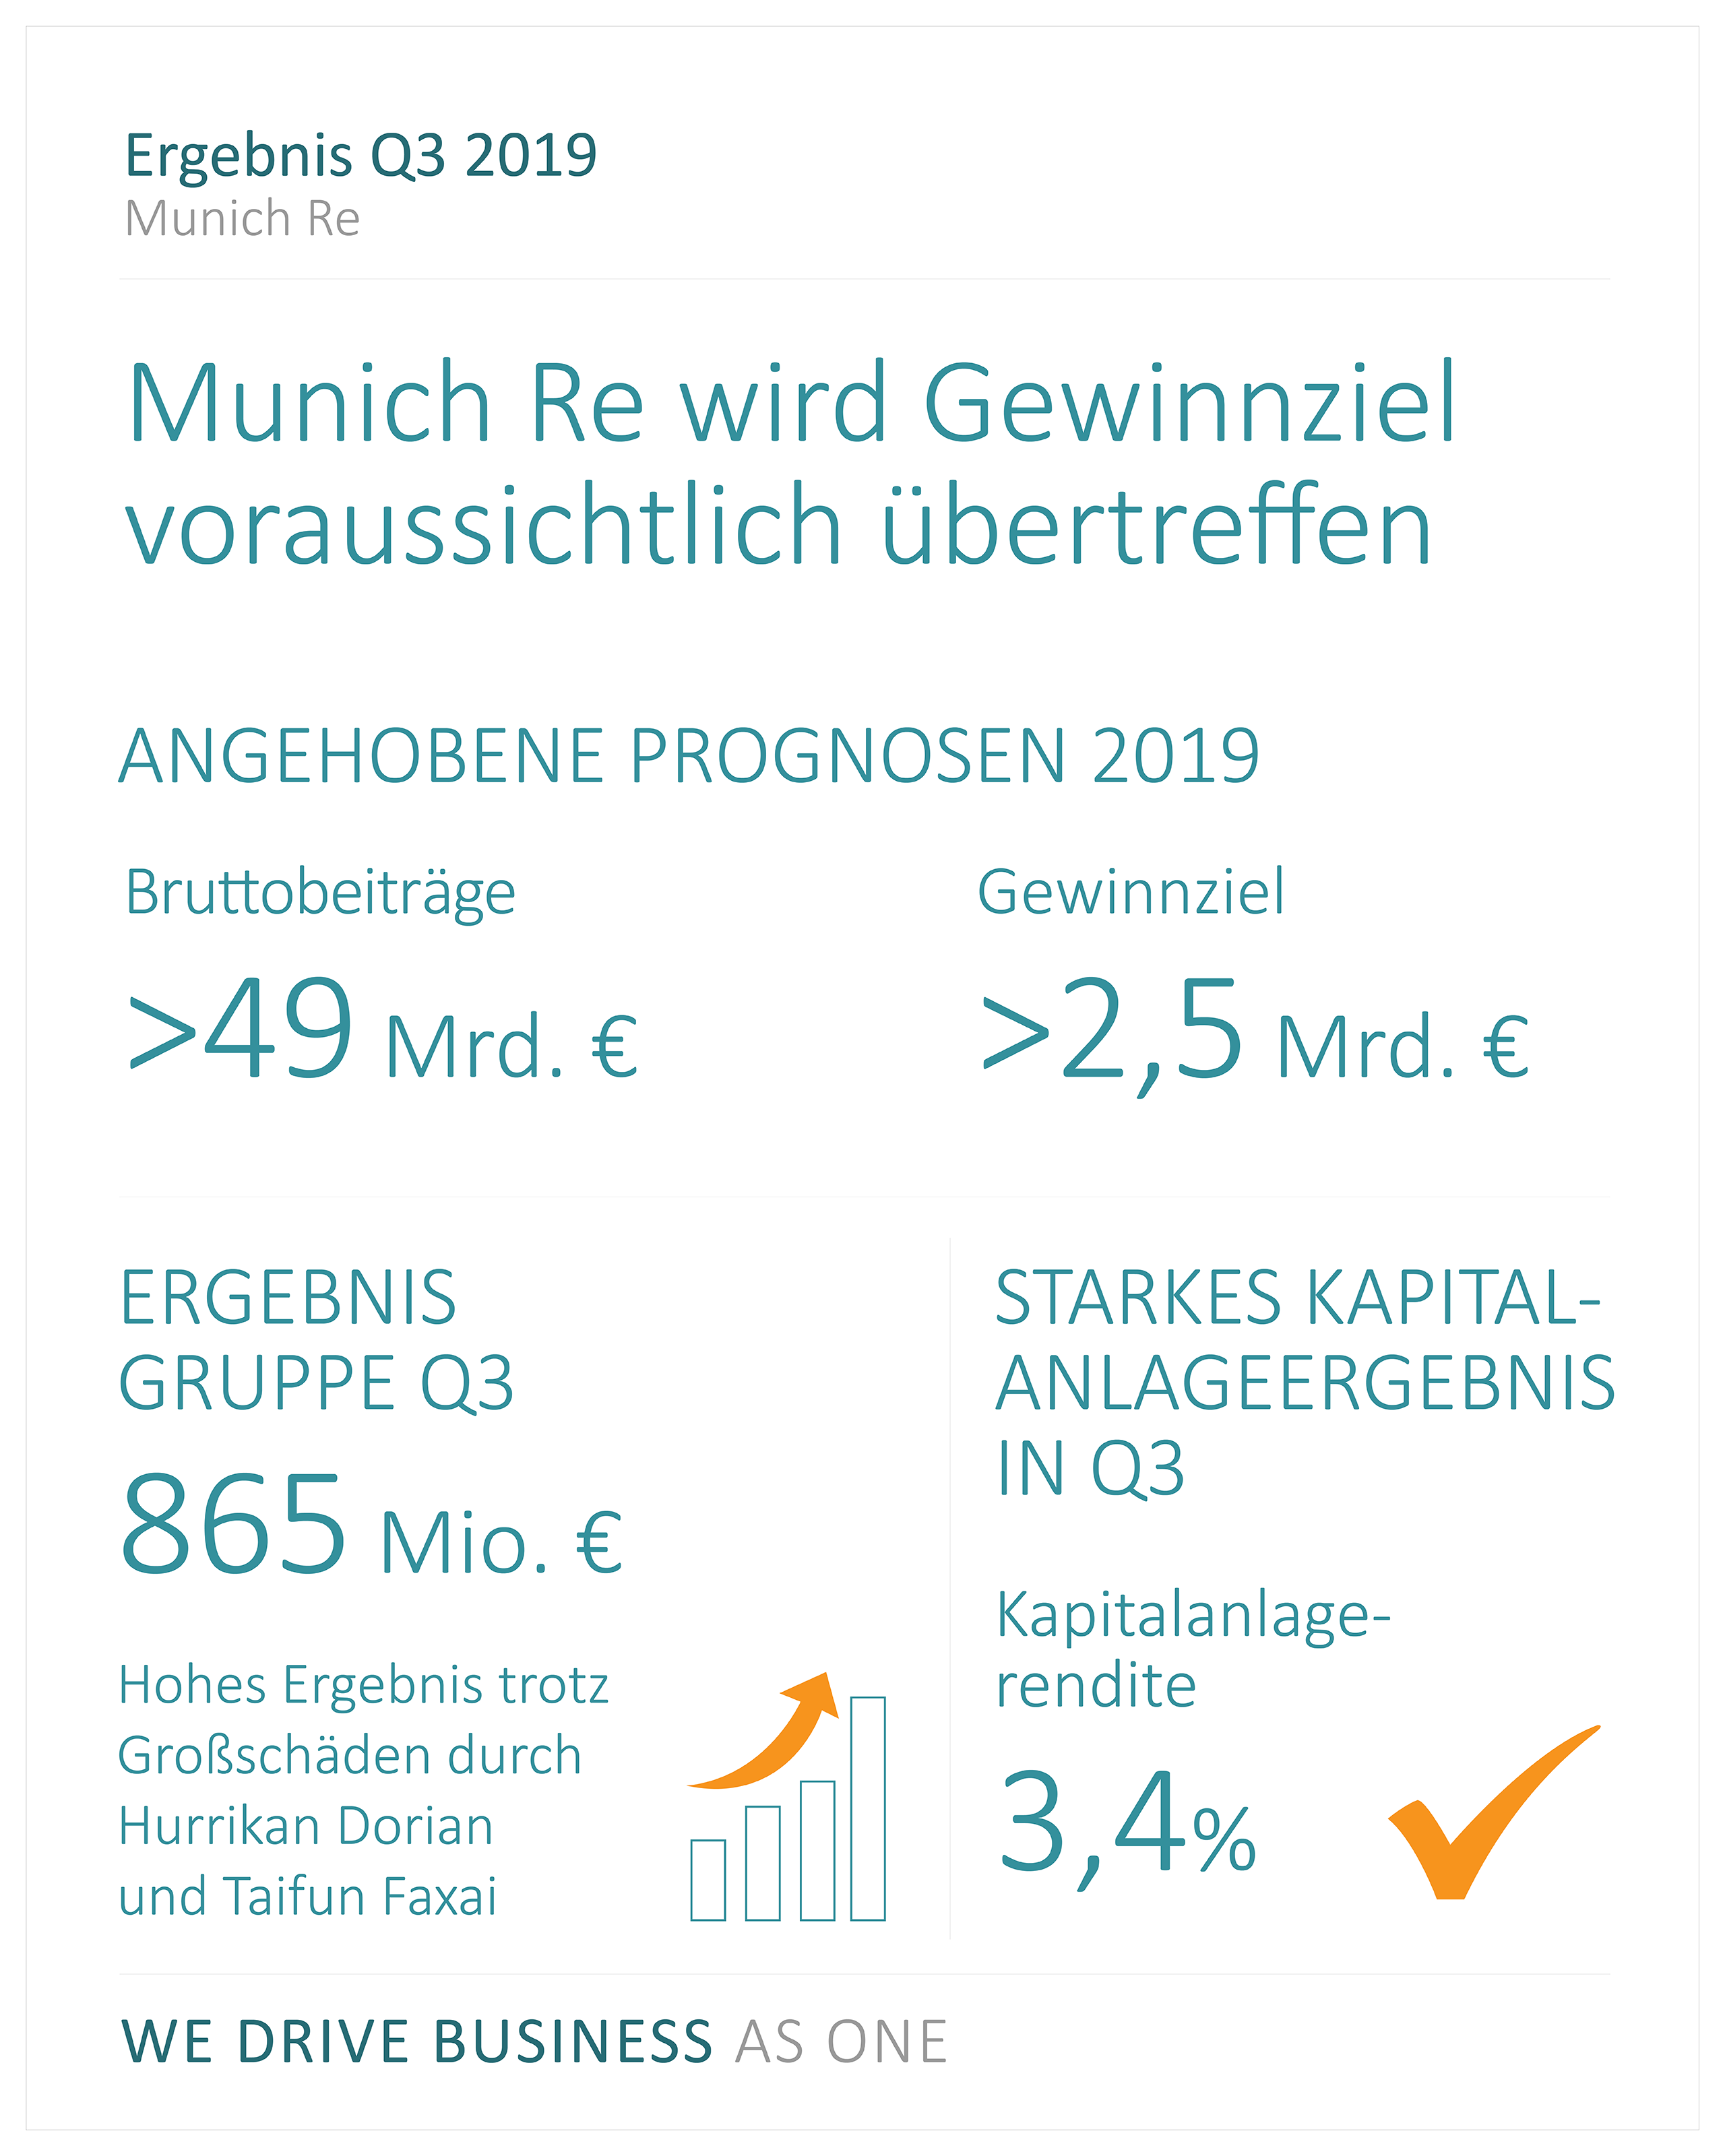 Quartalsmitteilung: Munich Re wird Gewinnziel 2019 voraussichtlich übertreffen